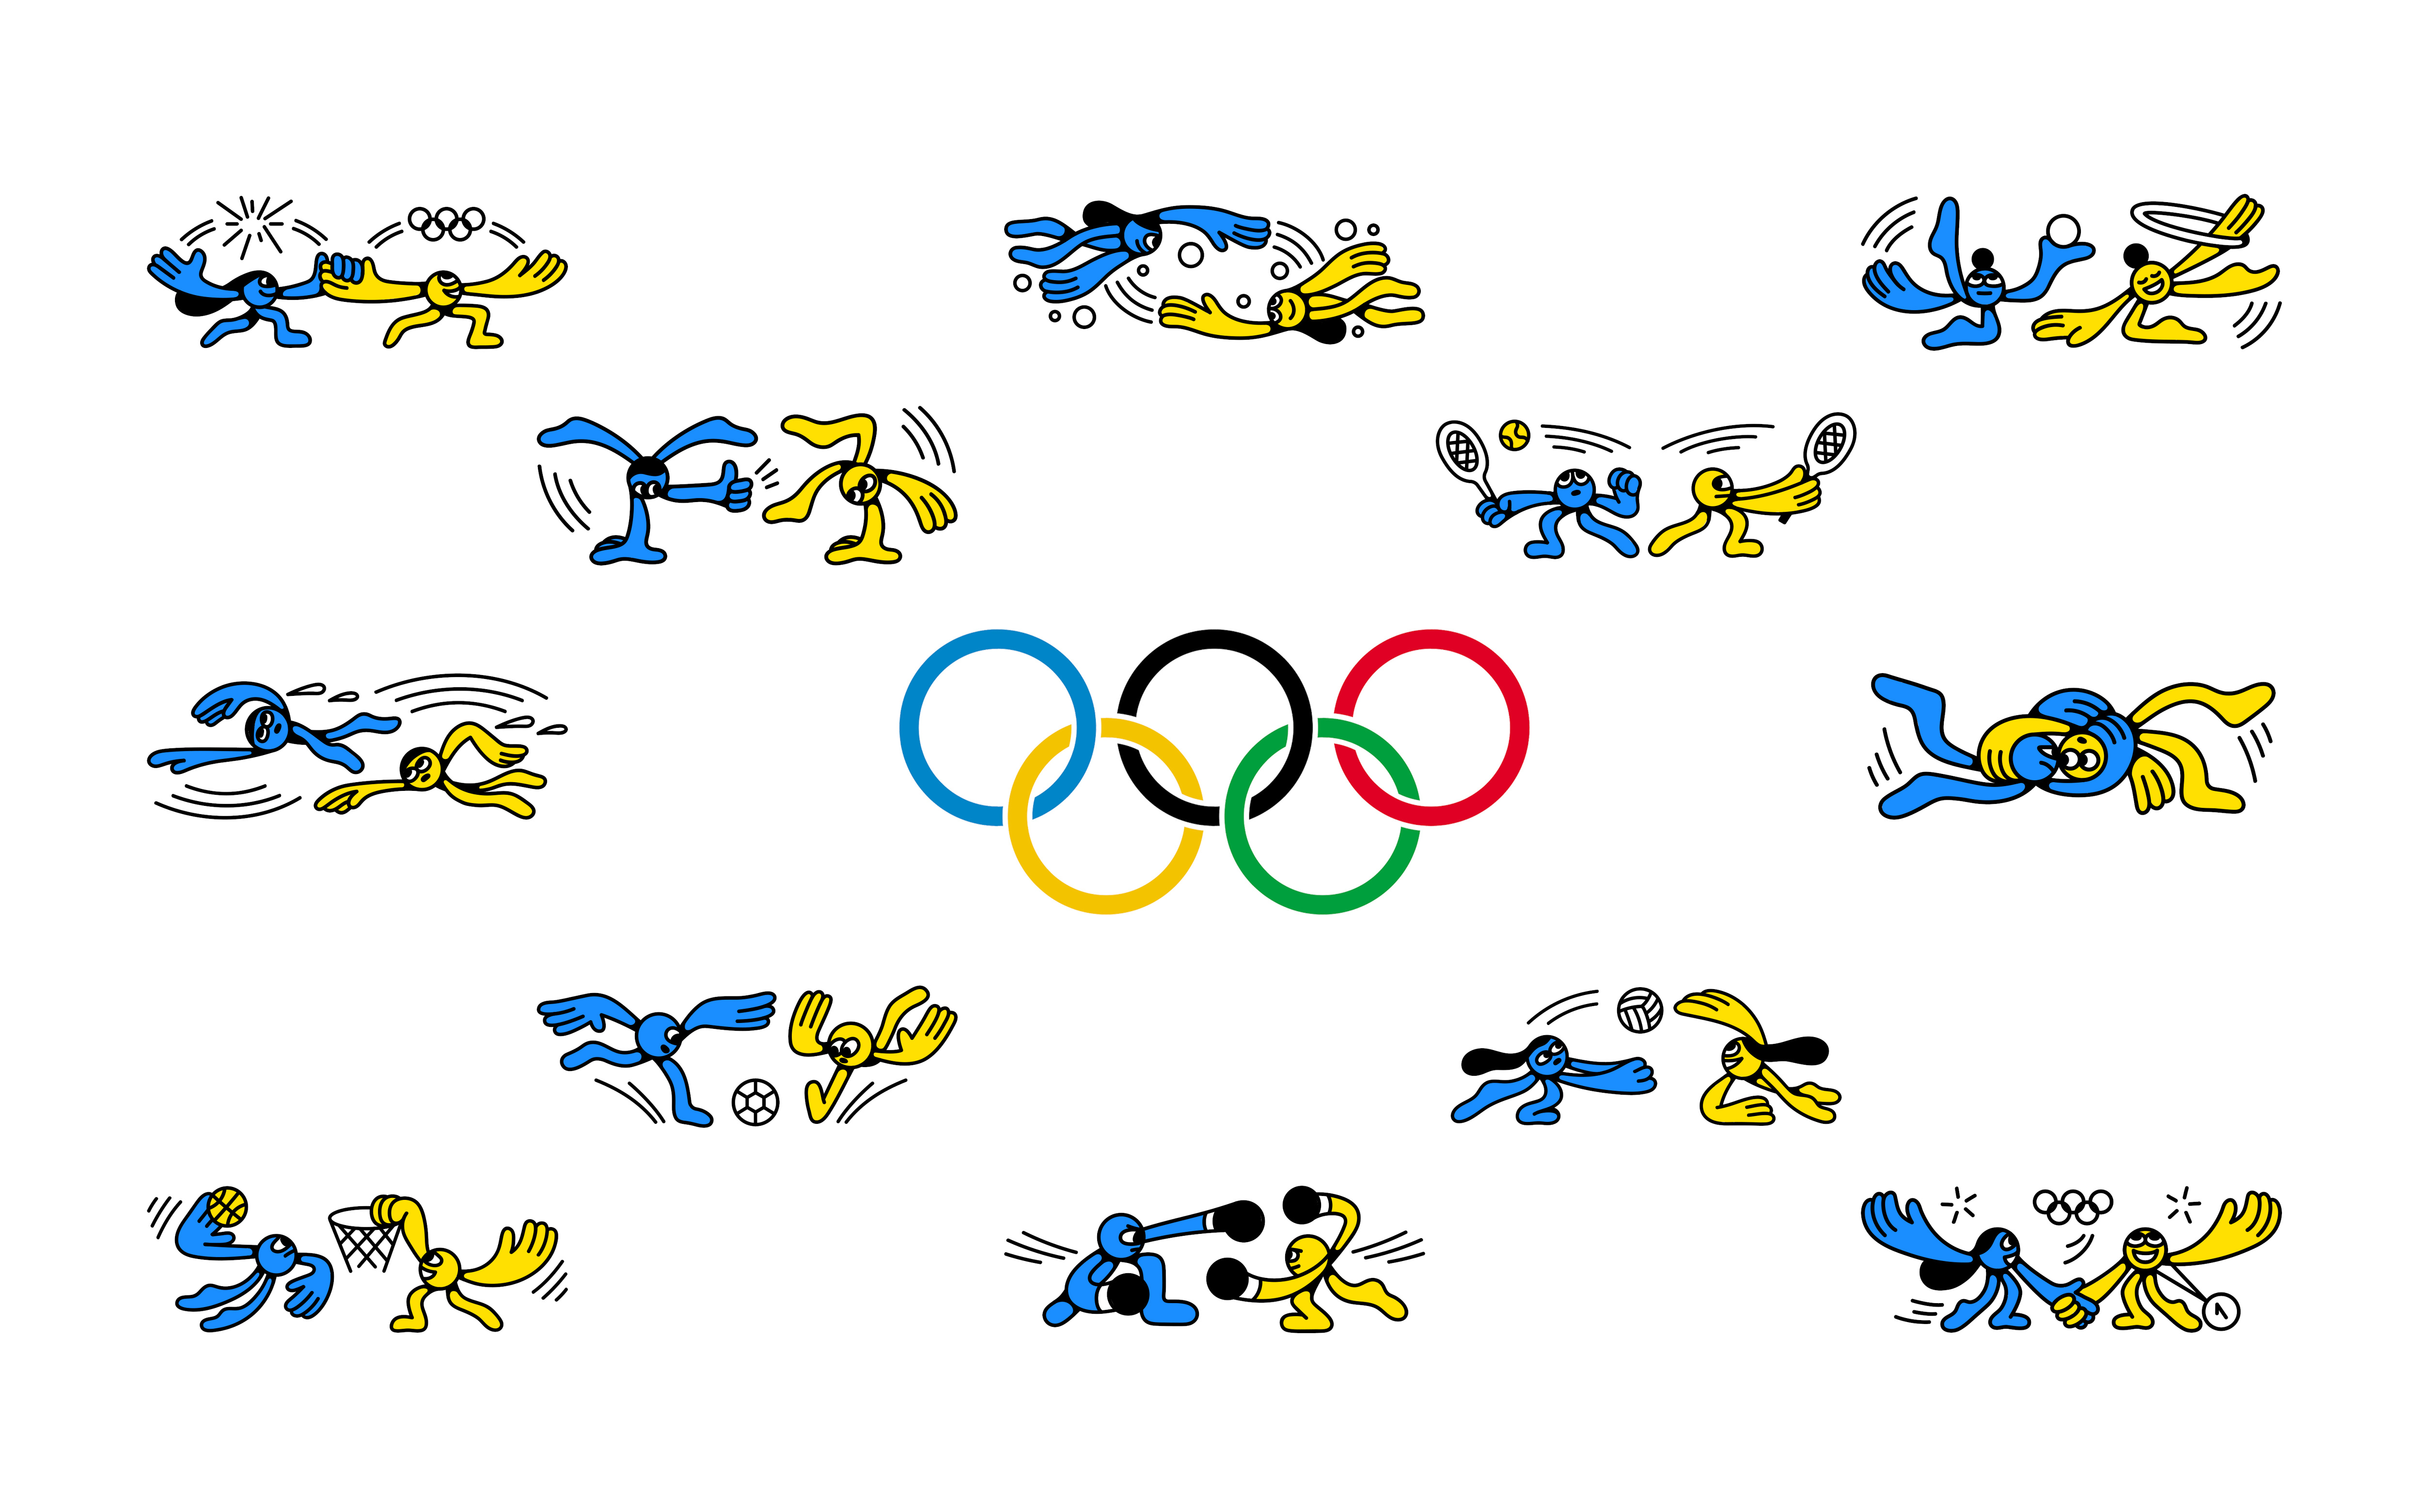 Игры олимпийские игры легкие. Олимпийские игры для детей. Олимпийская символика вектор. Олимпийские игры картинки для детей. Спортивная символика картинки для детей.